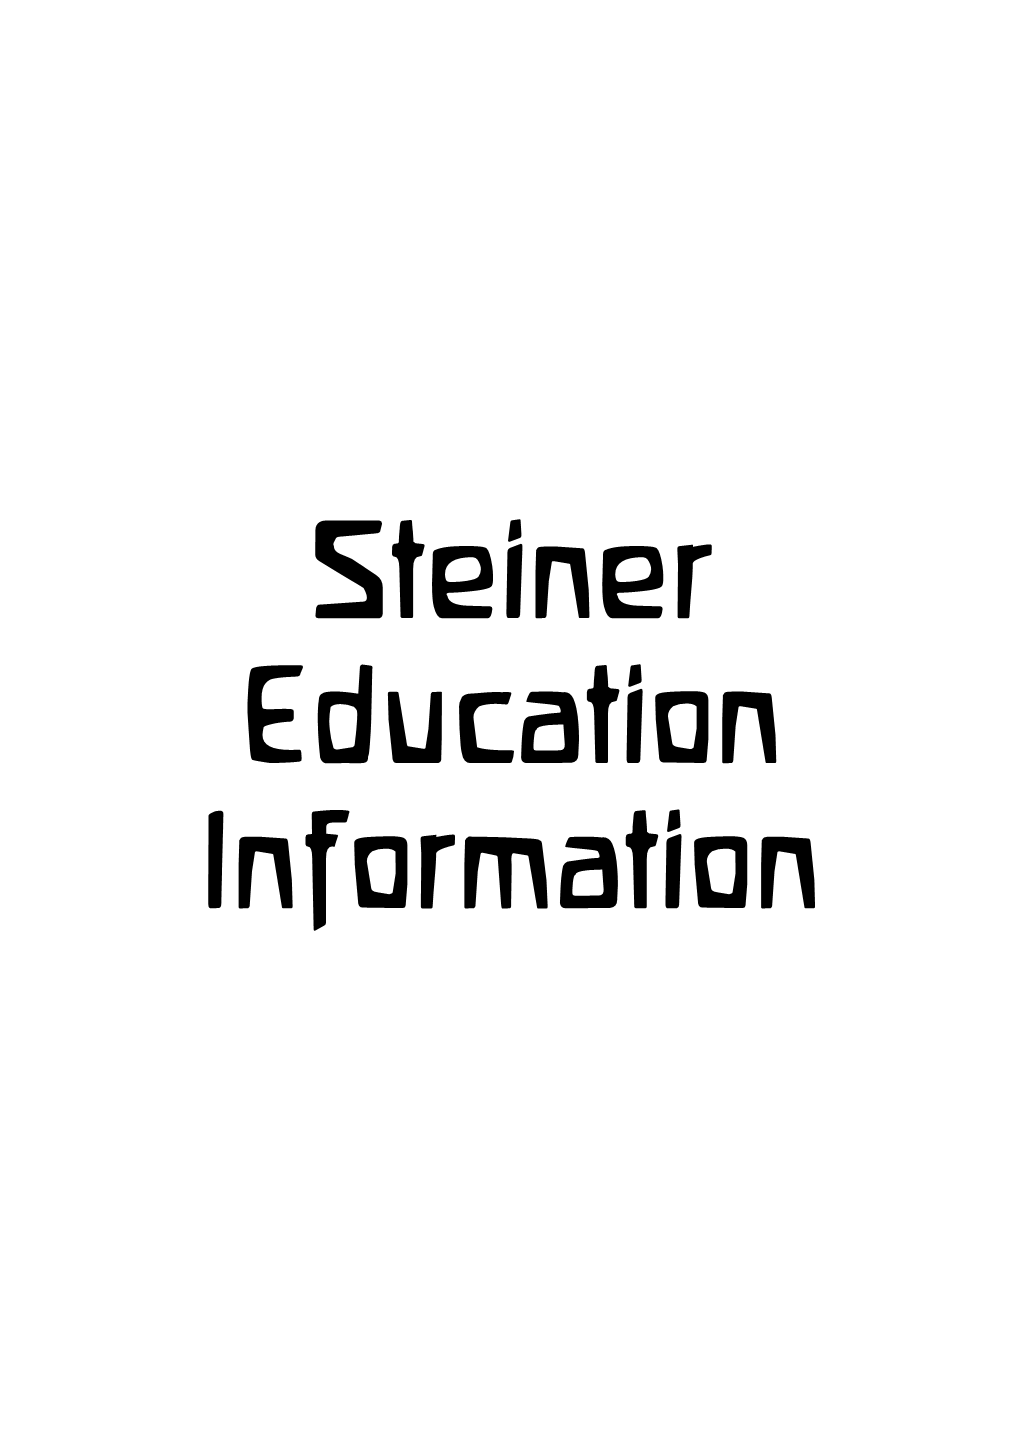 (Rudolf Steiner) Education